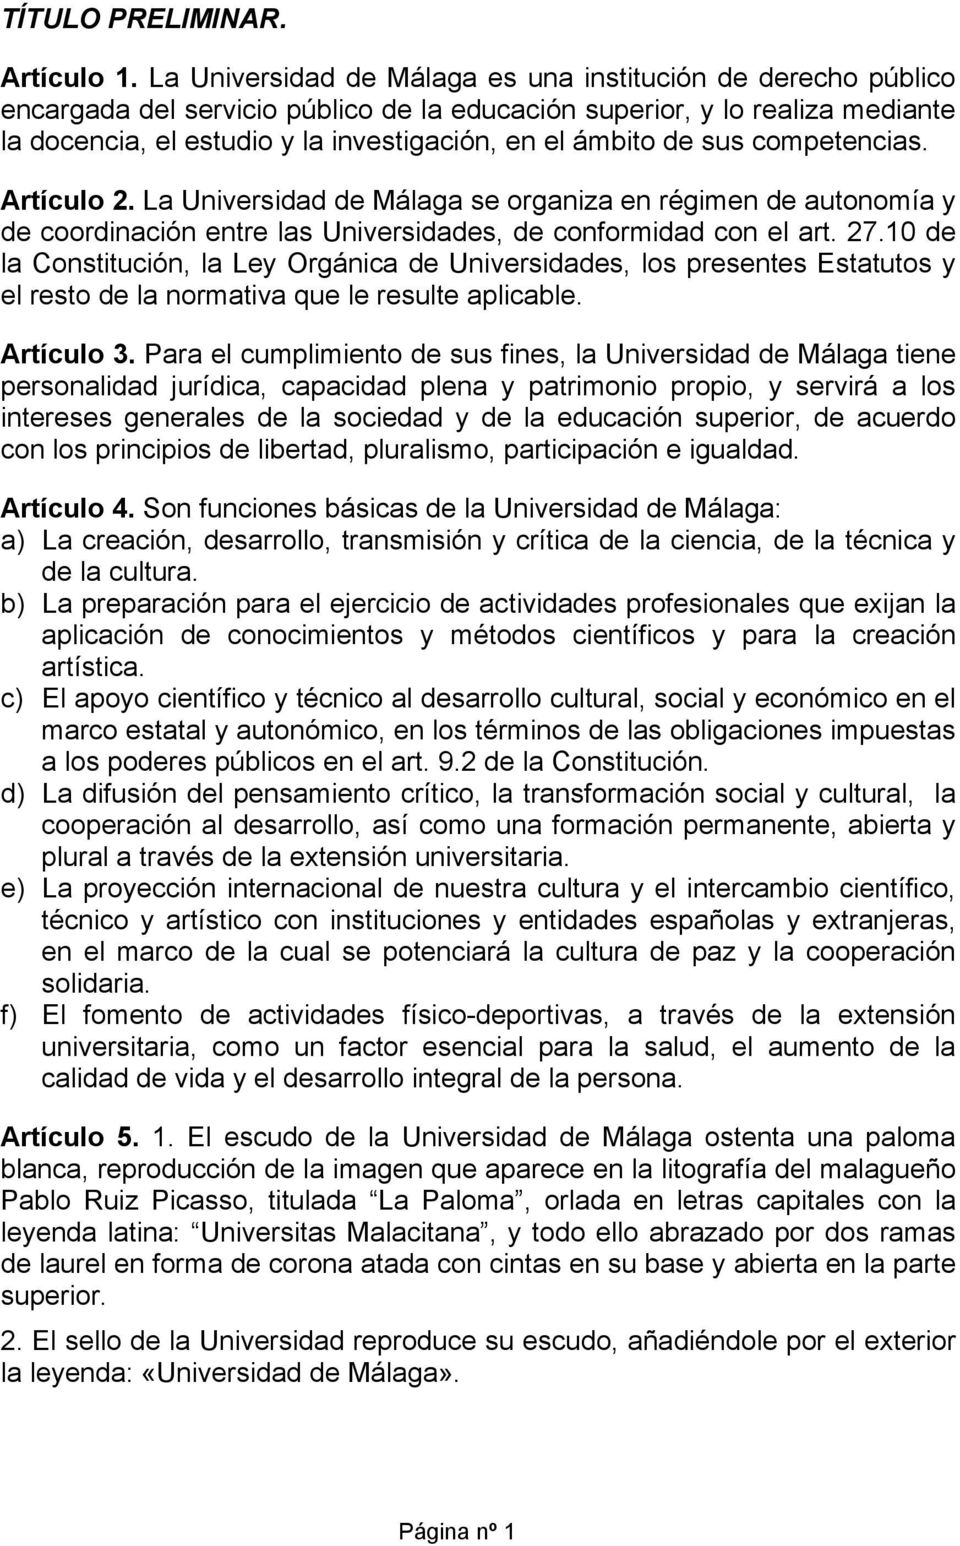 de sus competencias. Artículo 2. La Universidad de Málaga se organiza en régimen de autonomía y de coordinación entre las Universidades, de conformidad con el art. 27.